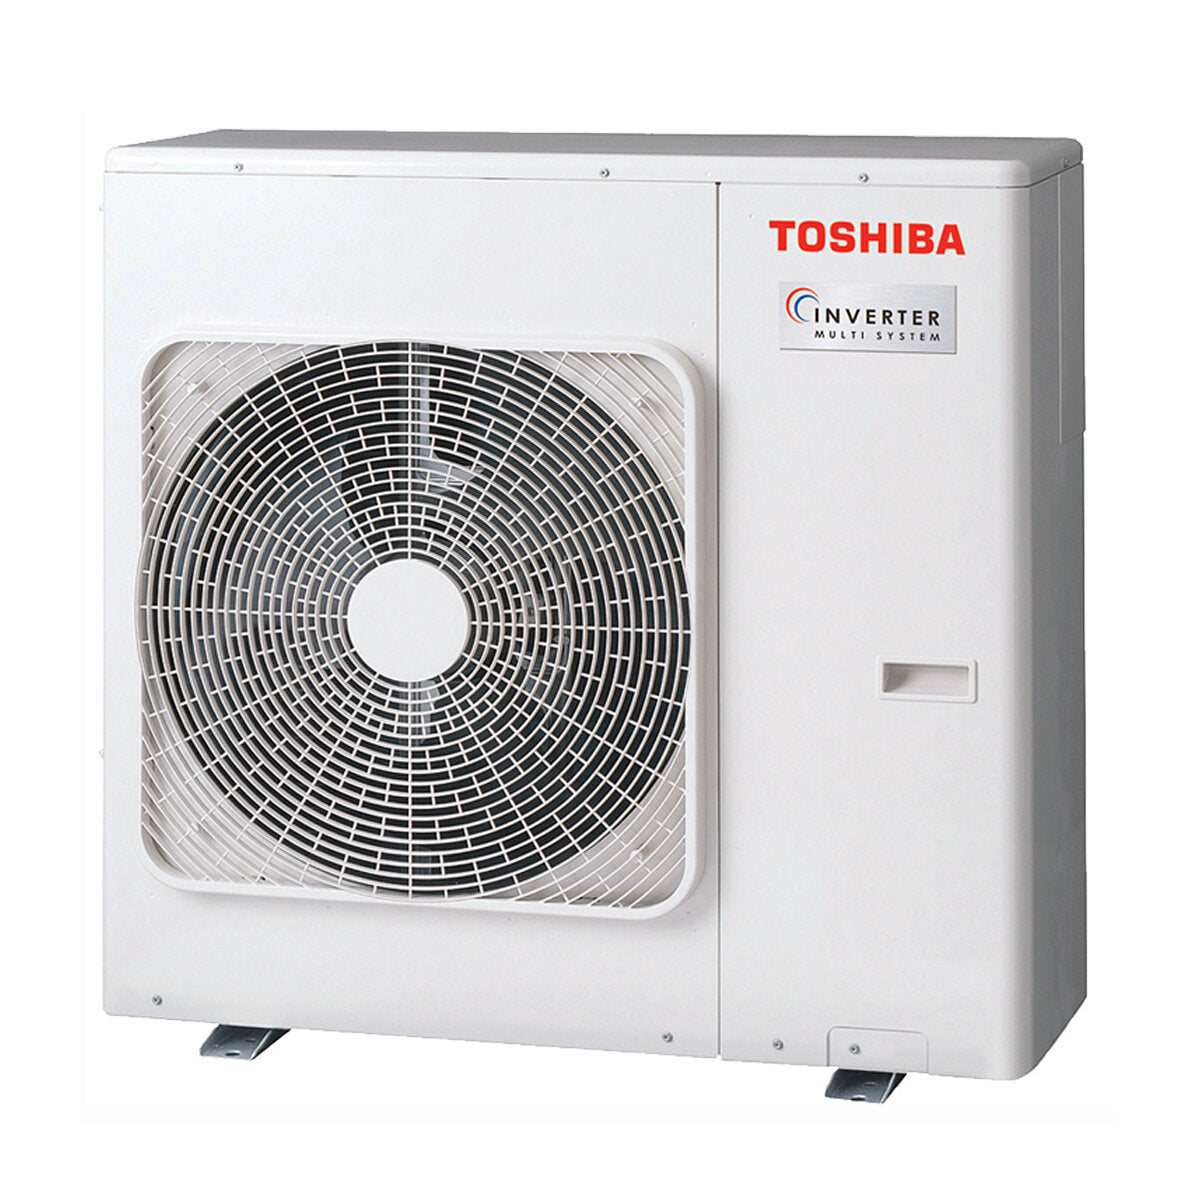 Toshiba Ductable Air Conditioner U2 penta split 7000 + 7000 + 7000 + 9000 + 9000 BTU inverter A++ unité extérieure 10,0 kW